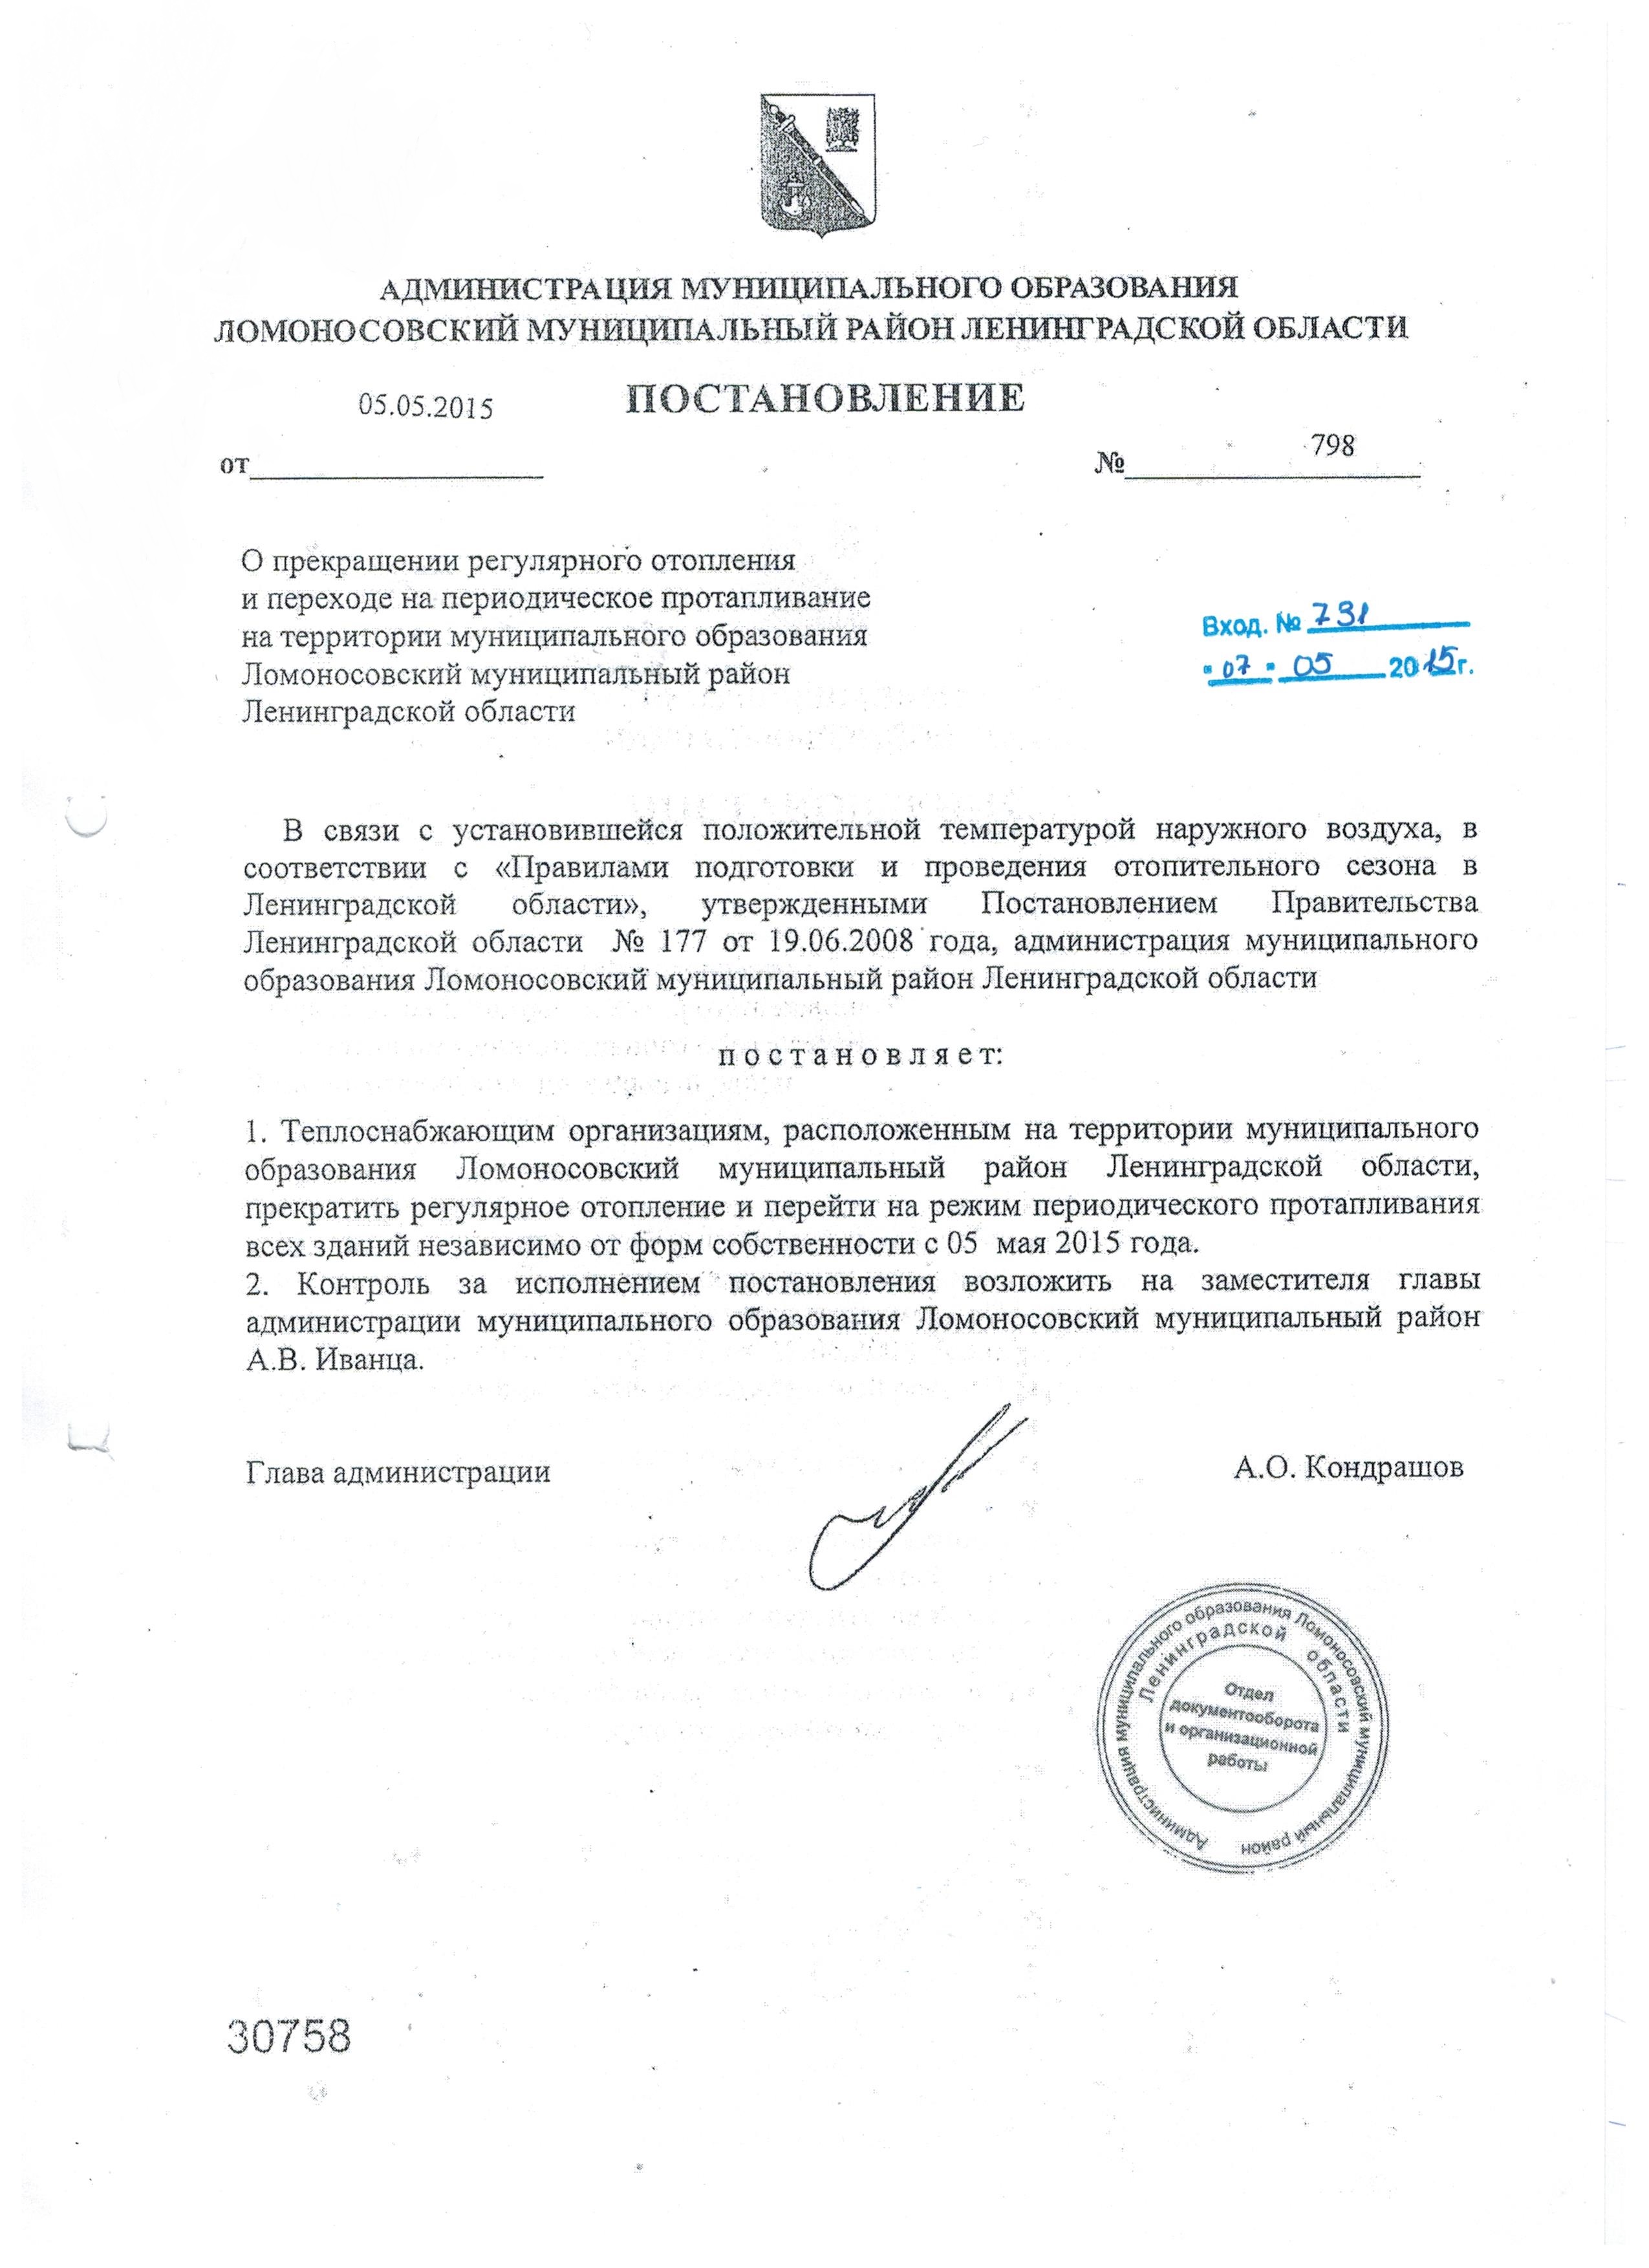 О прекращении регулярного отопления и переходе на периодическое протапливание на территории муниципального образования Ломоносовский муниципальный район